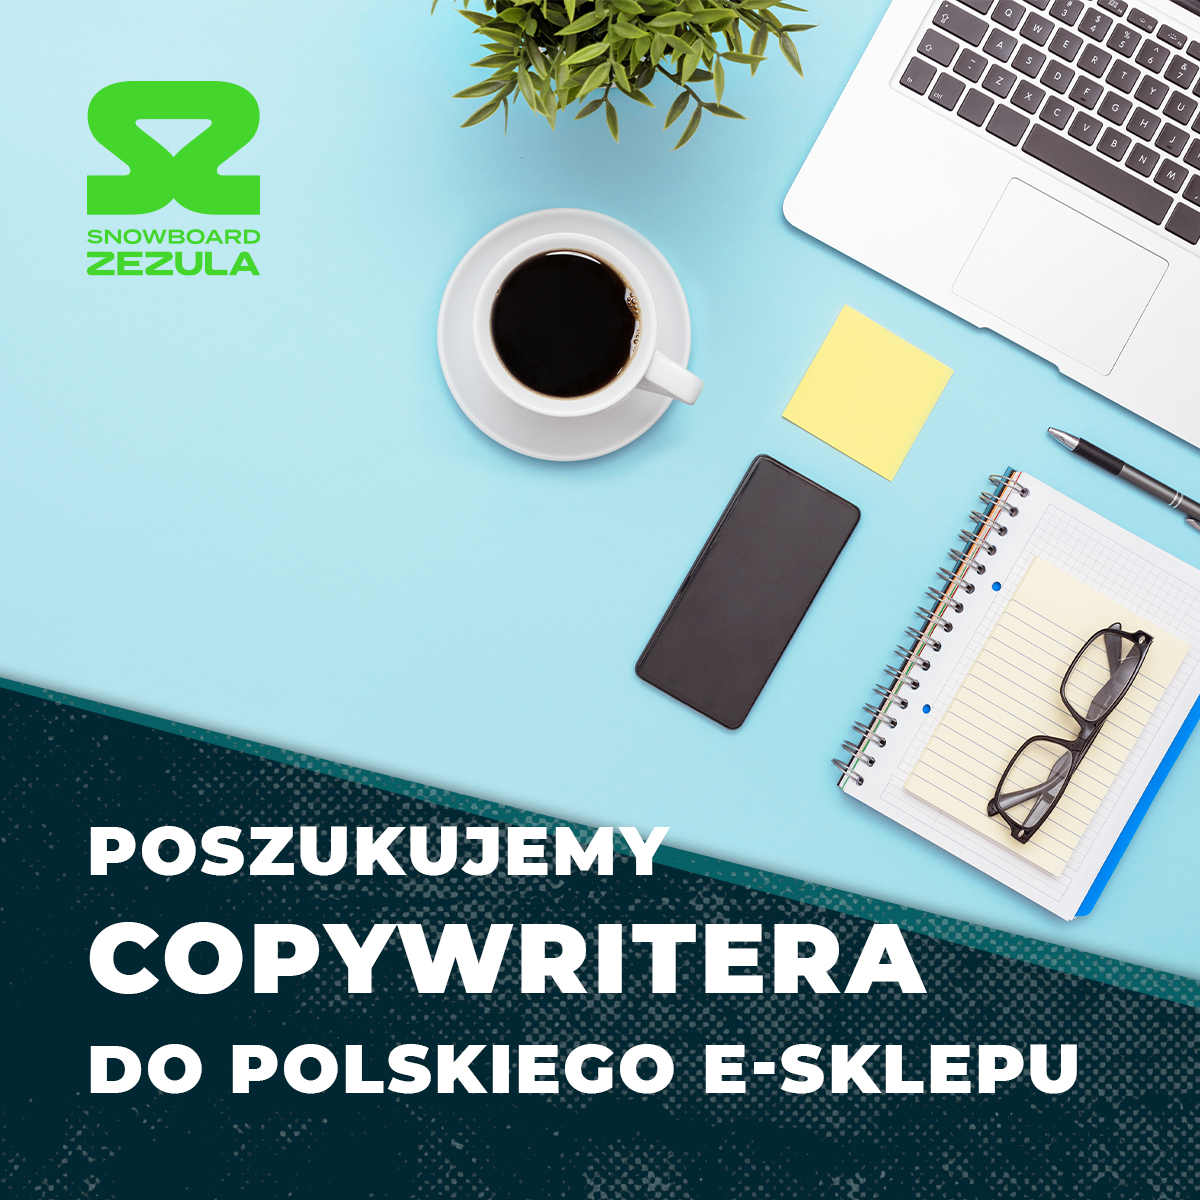 Hledáme copywritera/copywriterku pro polský e-shop